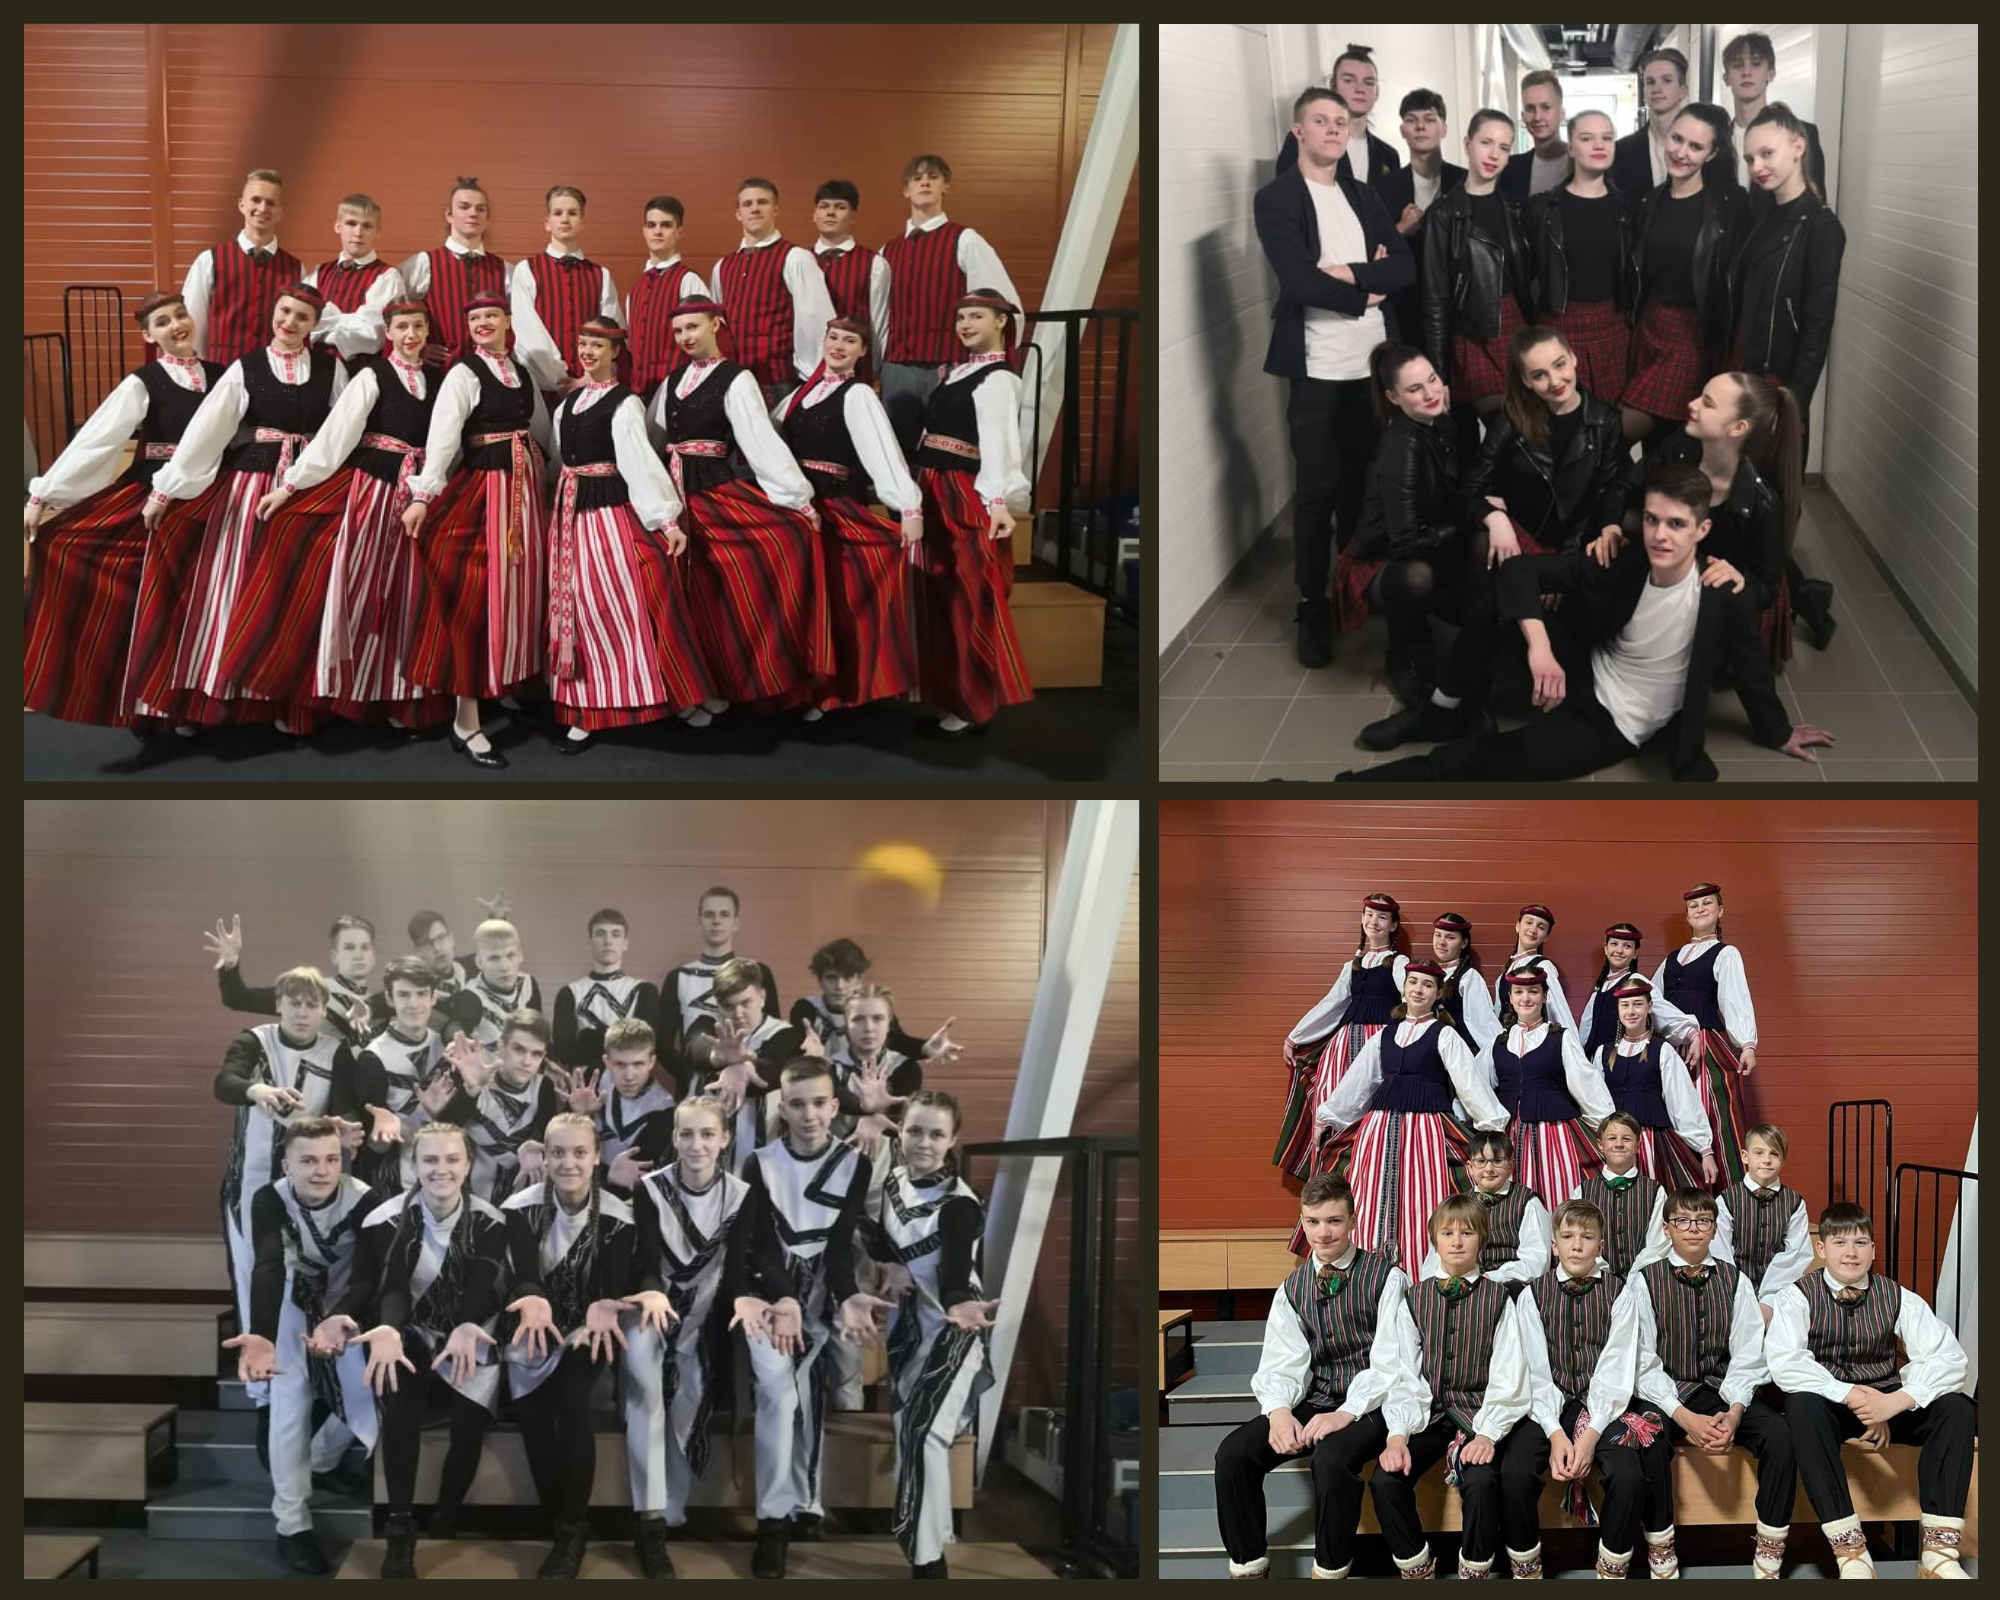 Jurbarko kultūros centro šokių kolektyvai skynė pergales X respublikiniame šokio festivalyje –konkurse ,,Pavasarinė šokių pynė”